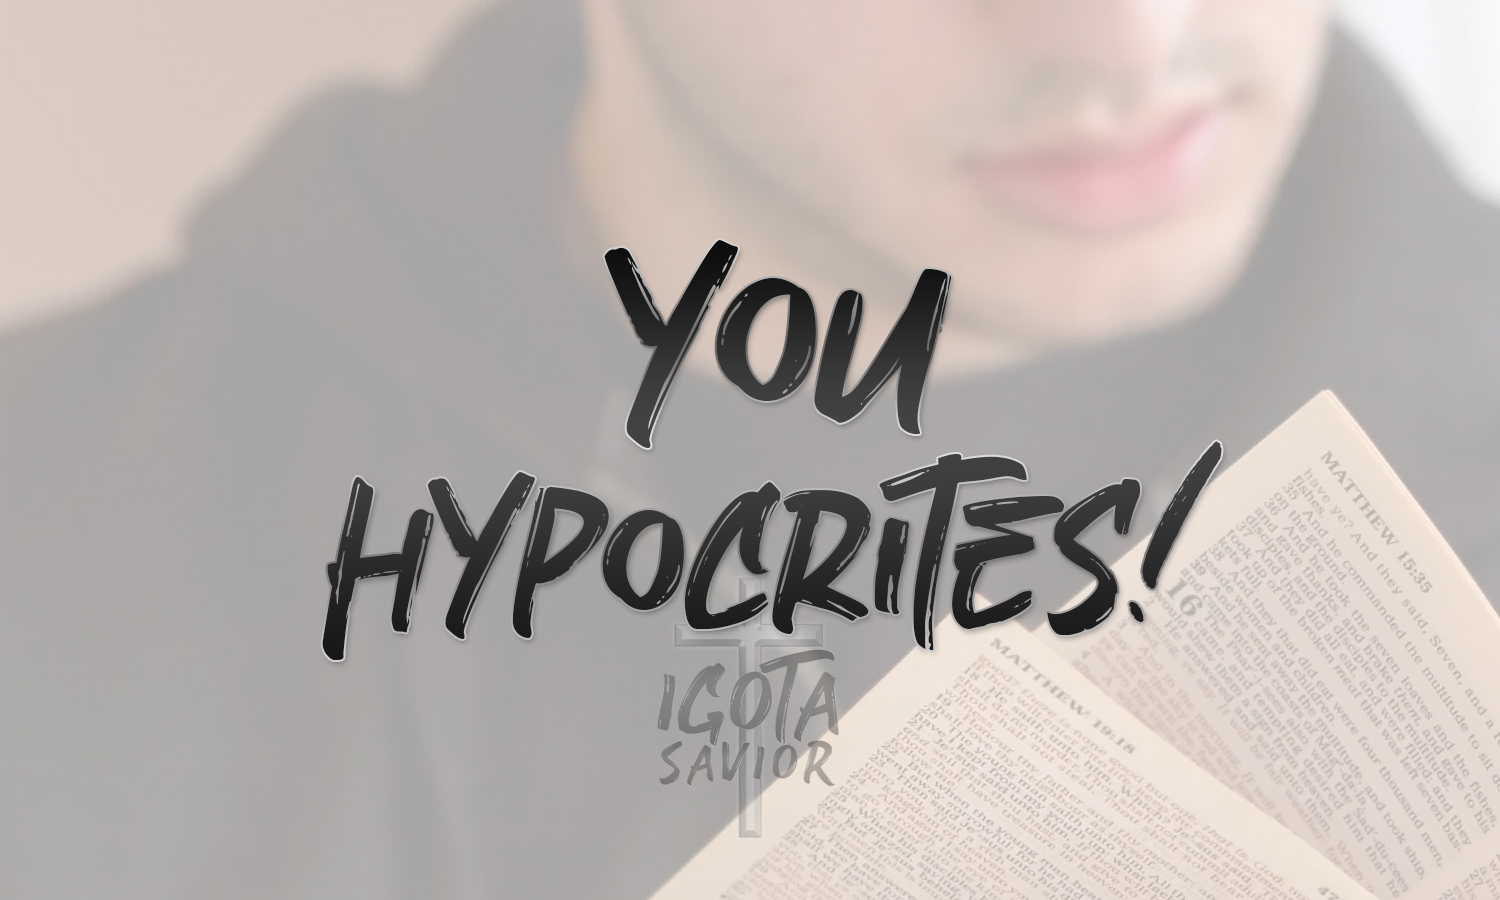 You Hypocrites!